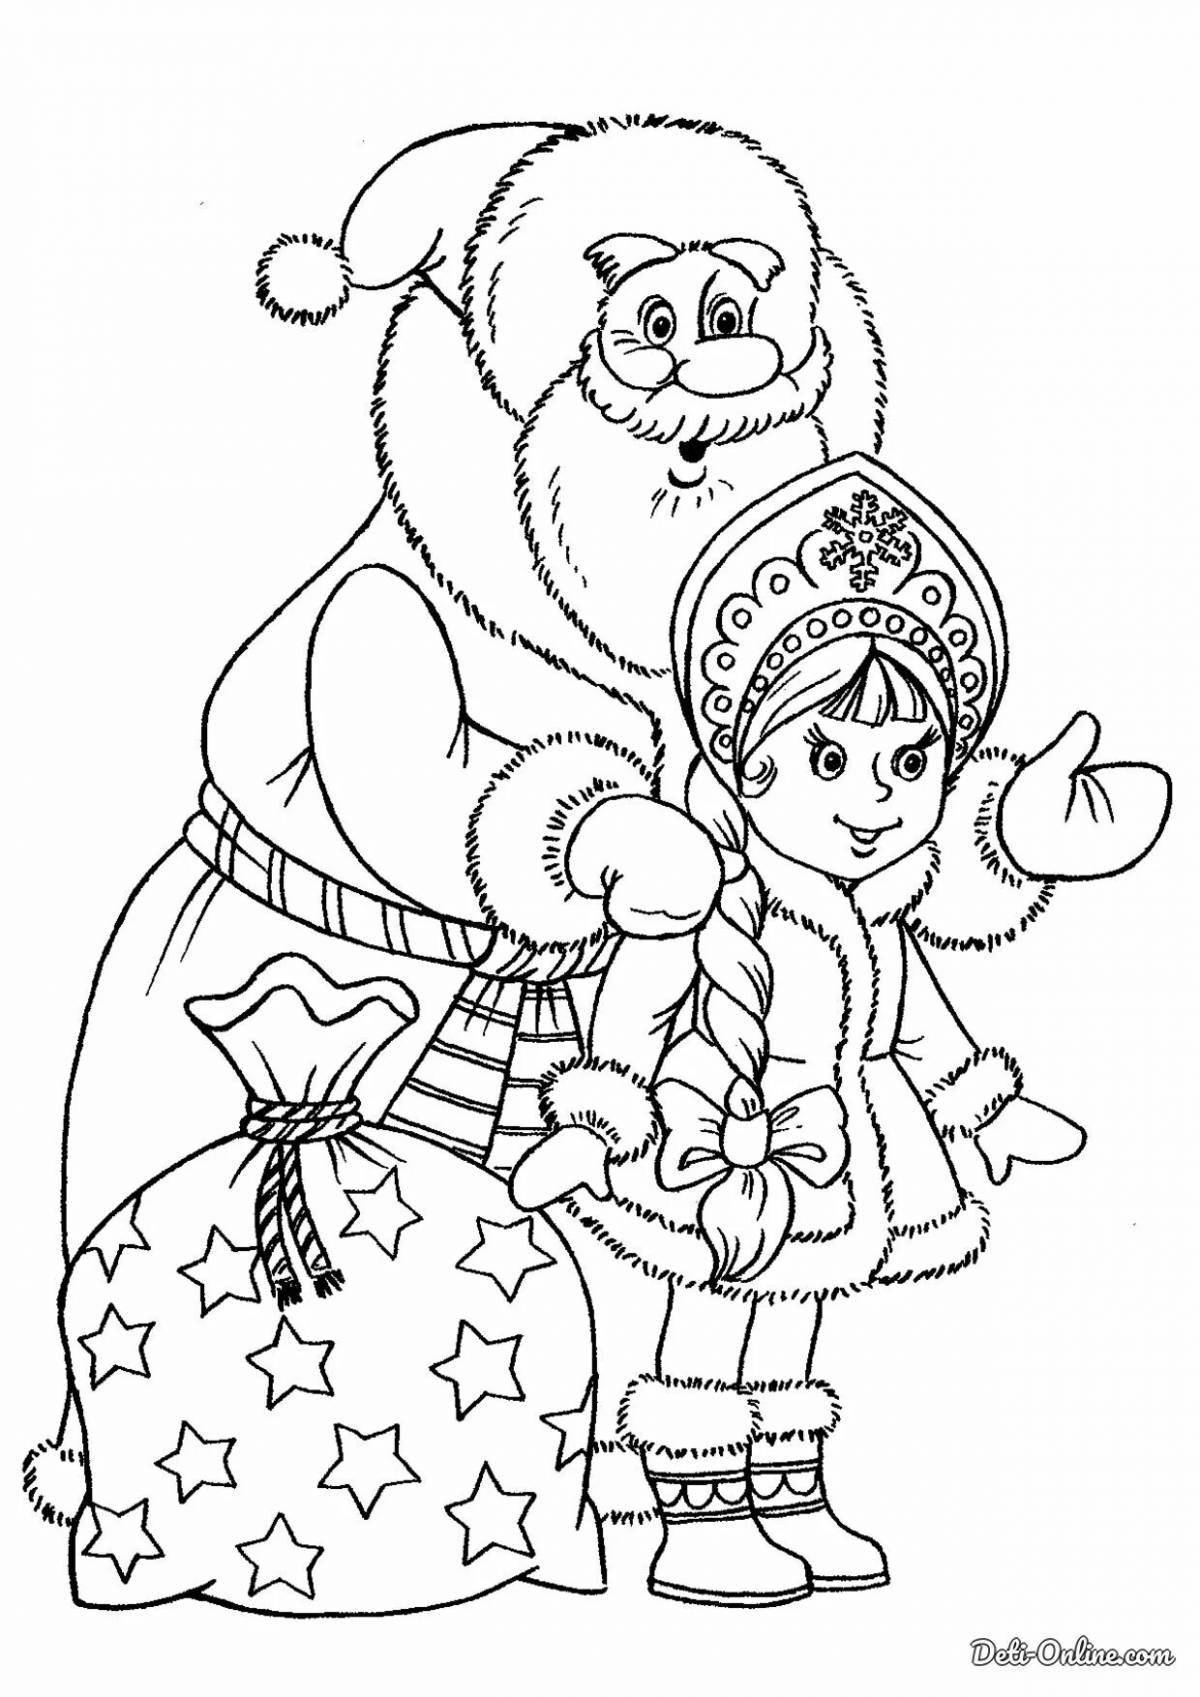 Радостный санта-клаус и снегурочка рождество раскраска